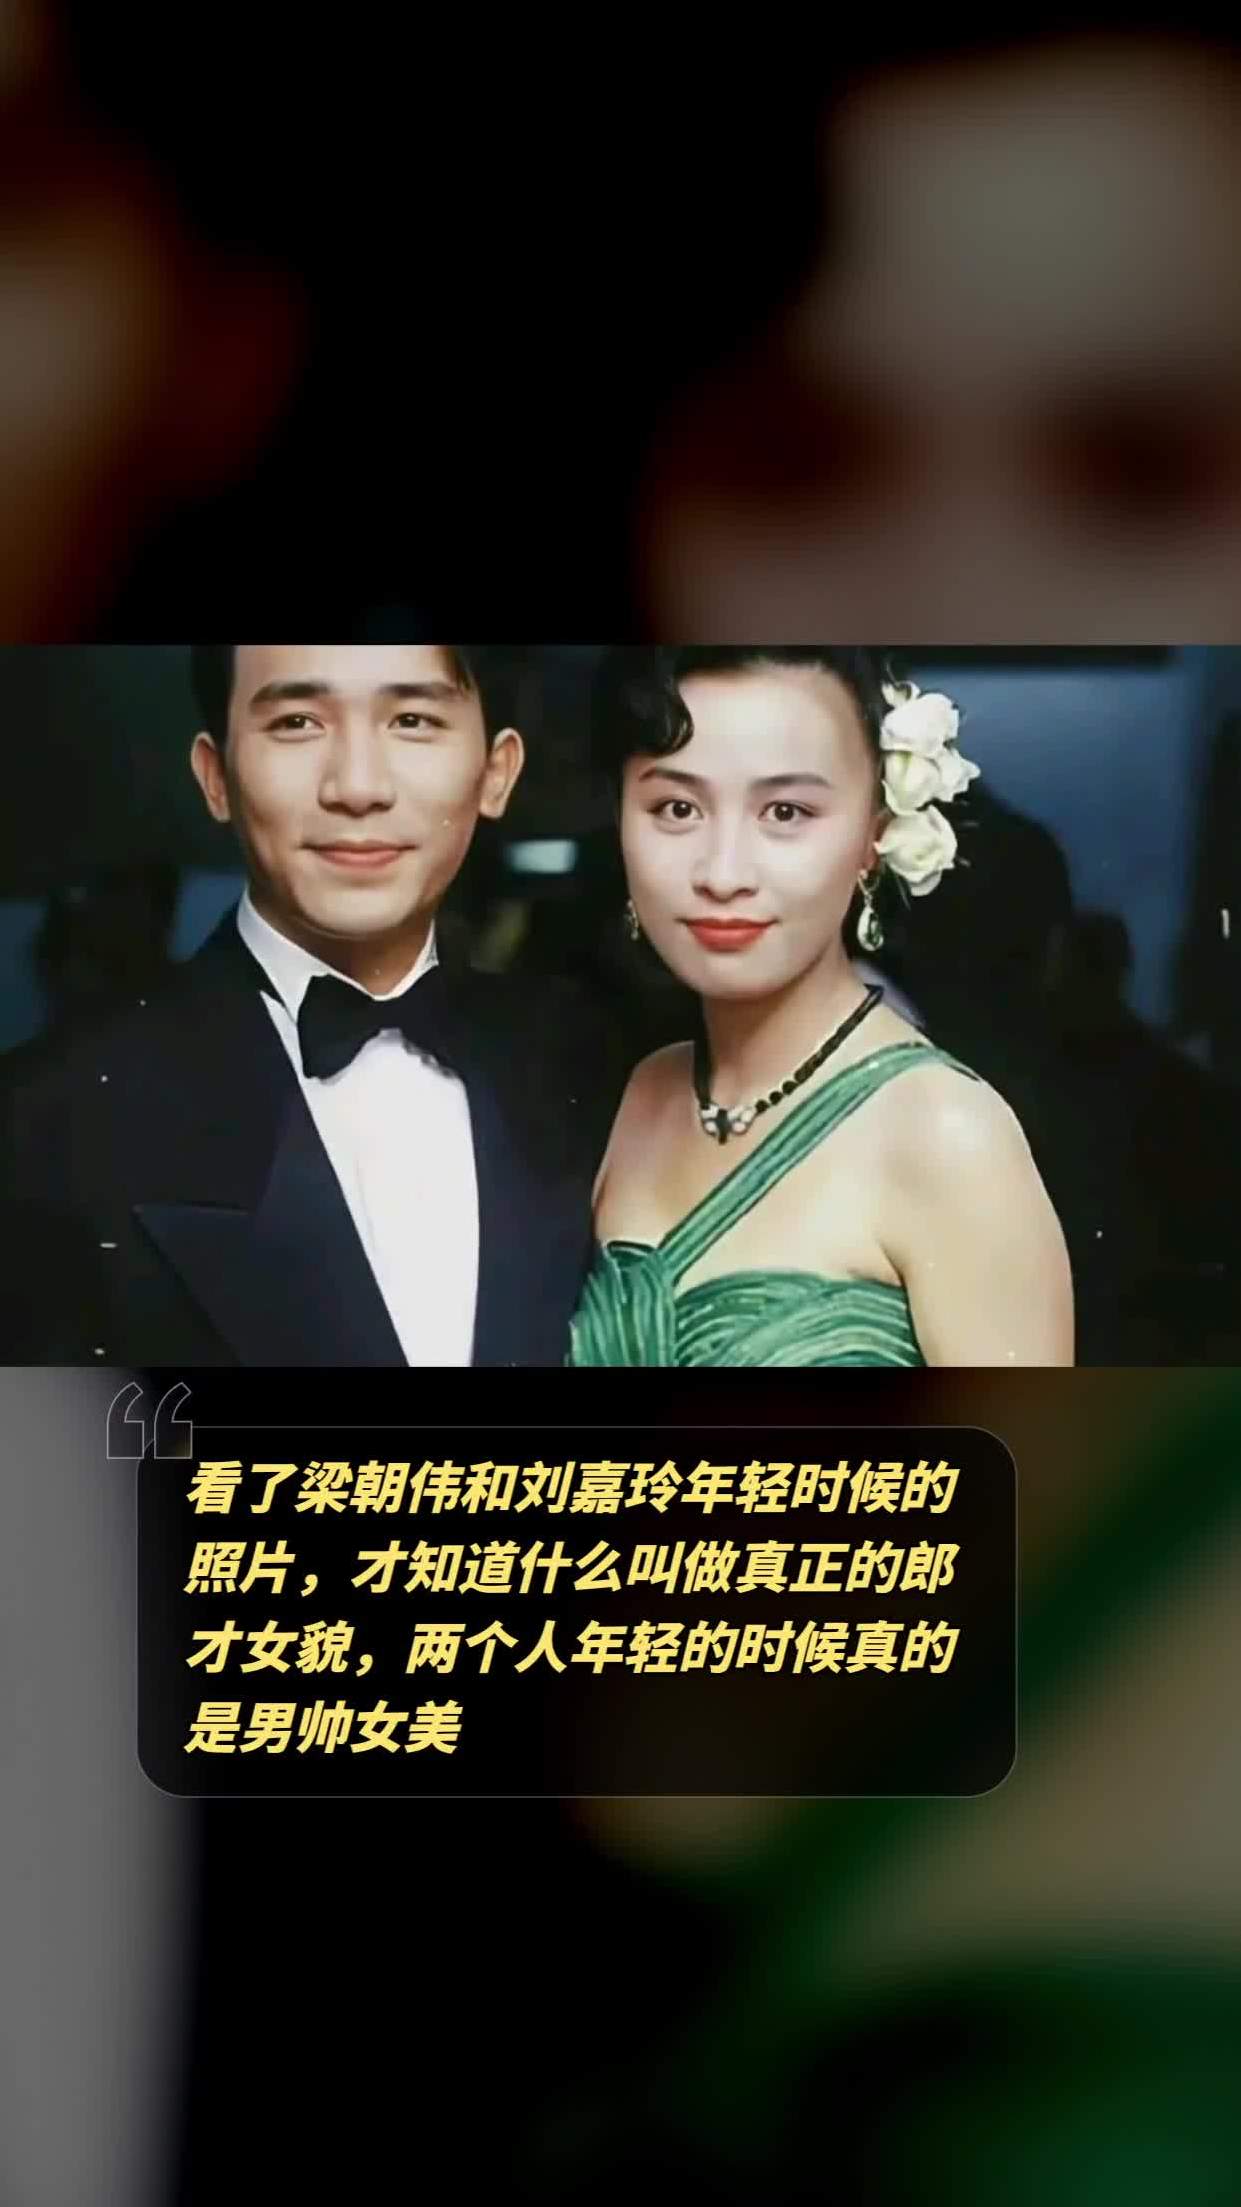 看了梁朝伟和刘嘉玲年轻时候的照片,才知道什么叫做真正的郎才女貌,两